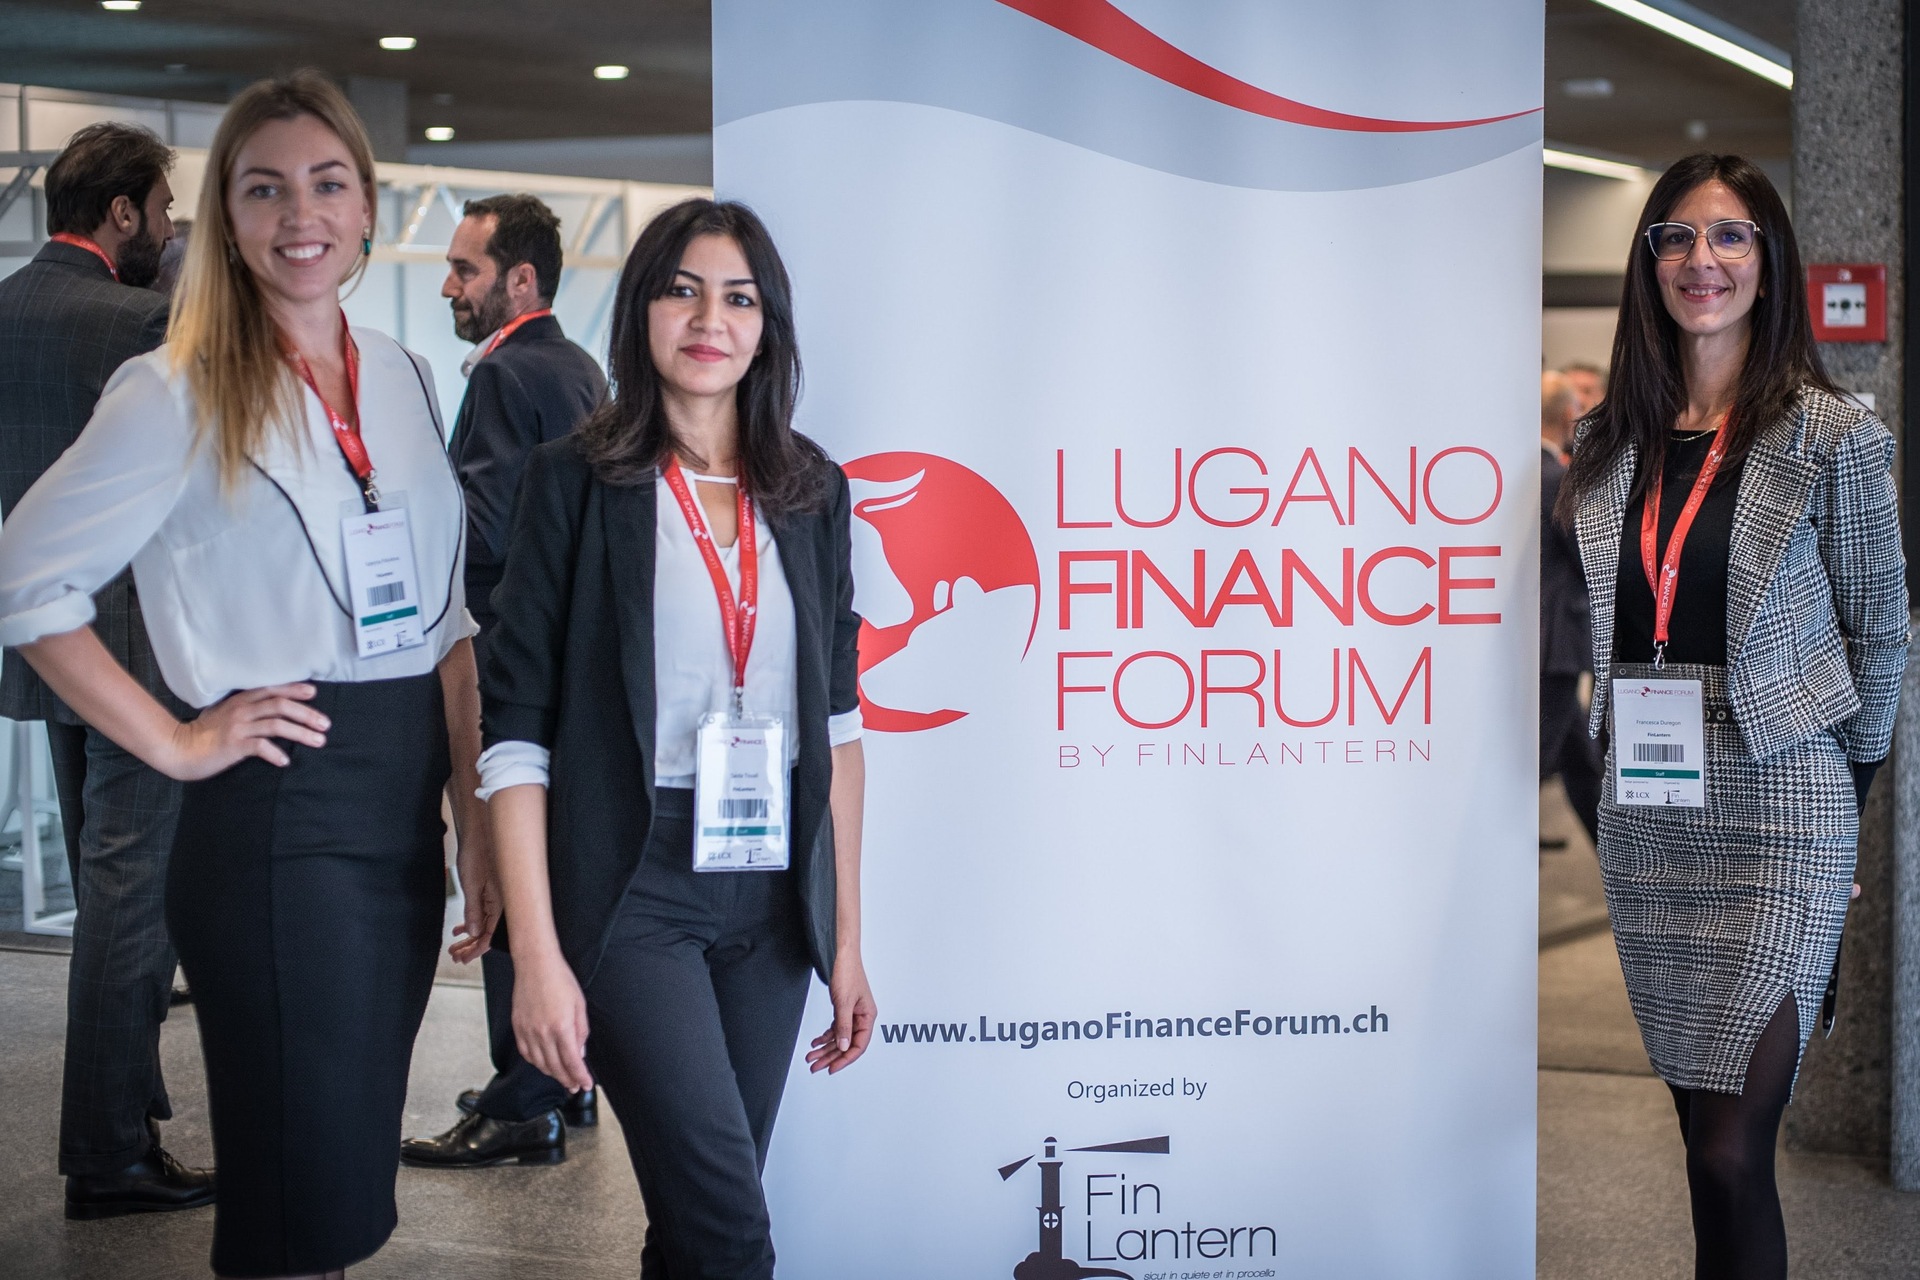 Lugano Finance Forum: izložbeni prostor "Lugano Finance Foruma" 2022.